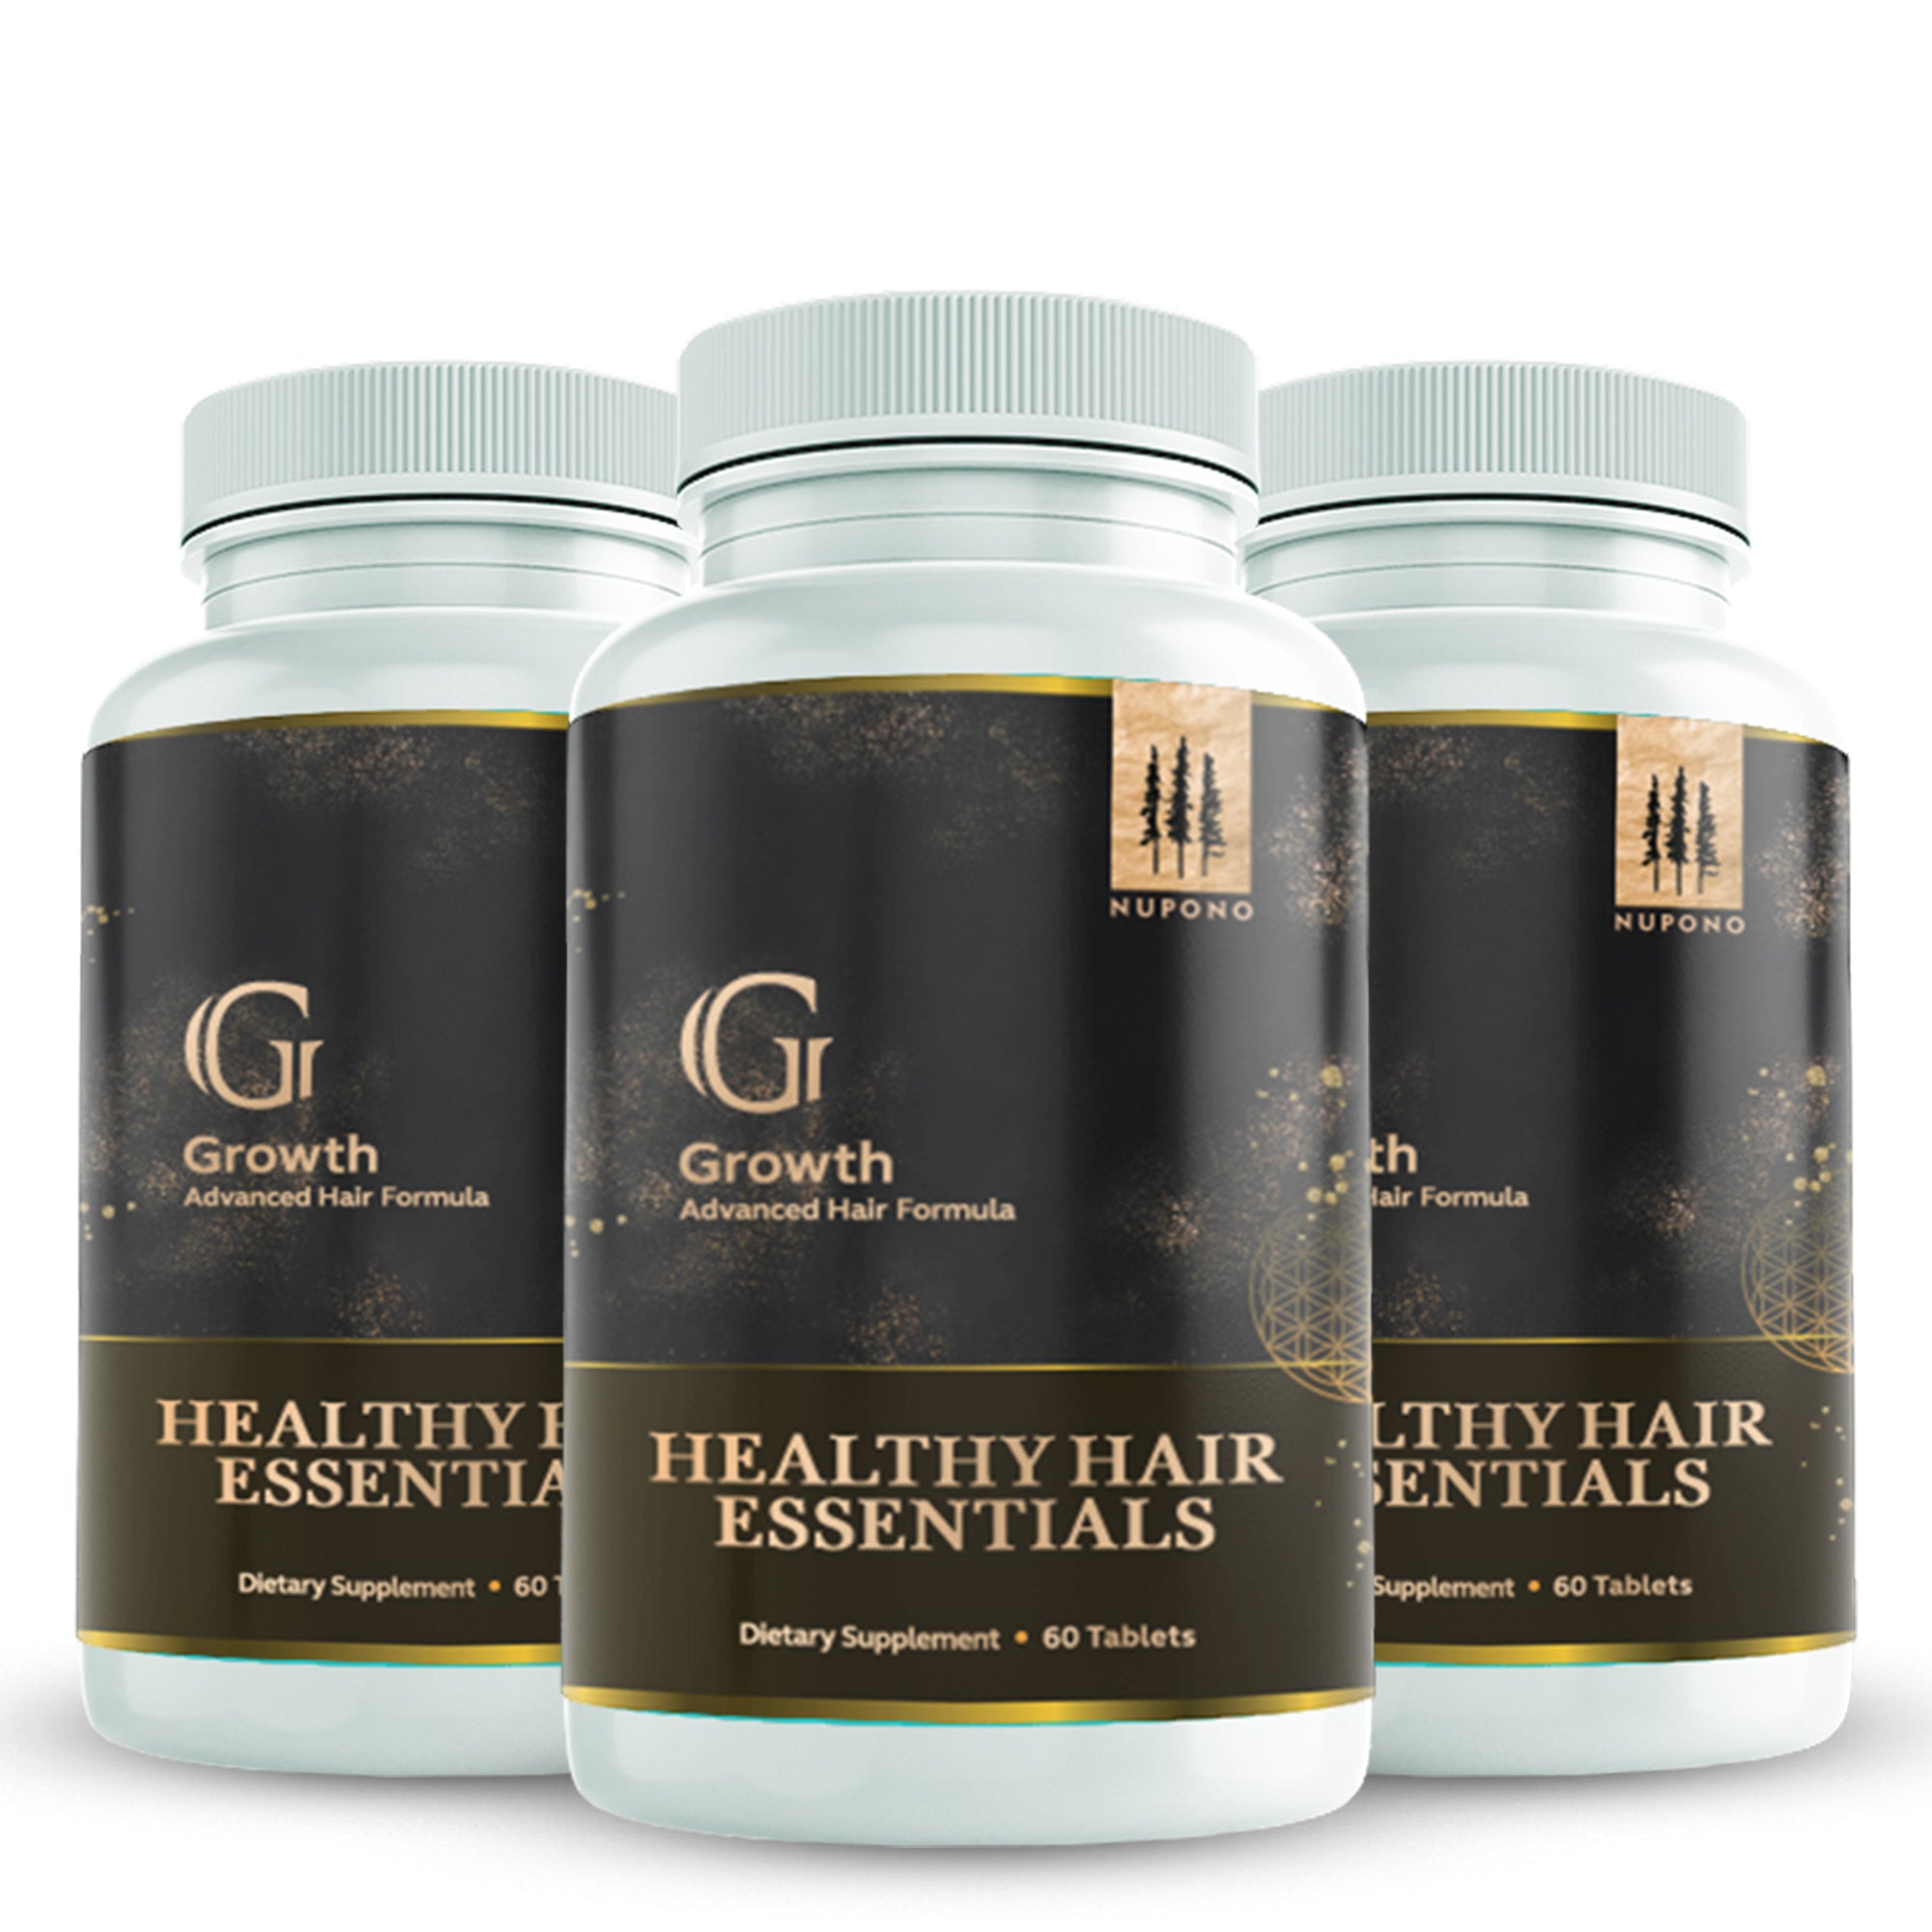 Healthy Hair Essentials 60 Tablets- Enhances Appearance of Hair and Promotes Hair Growth, Vitamin A, C, E, Thiamine, Vitamin B12, Vitamin B6